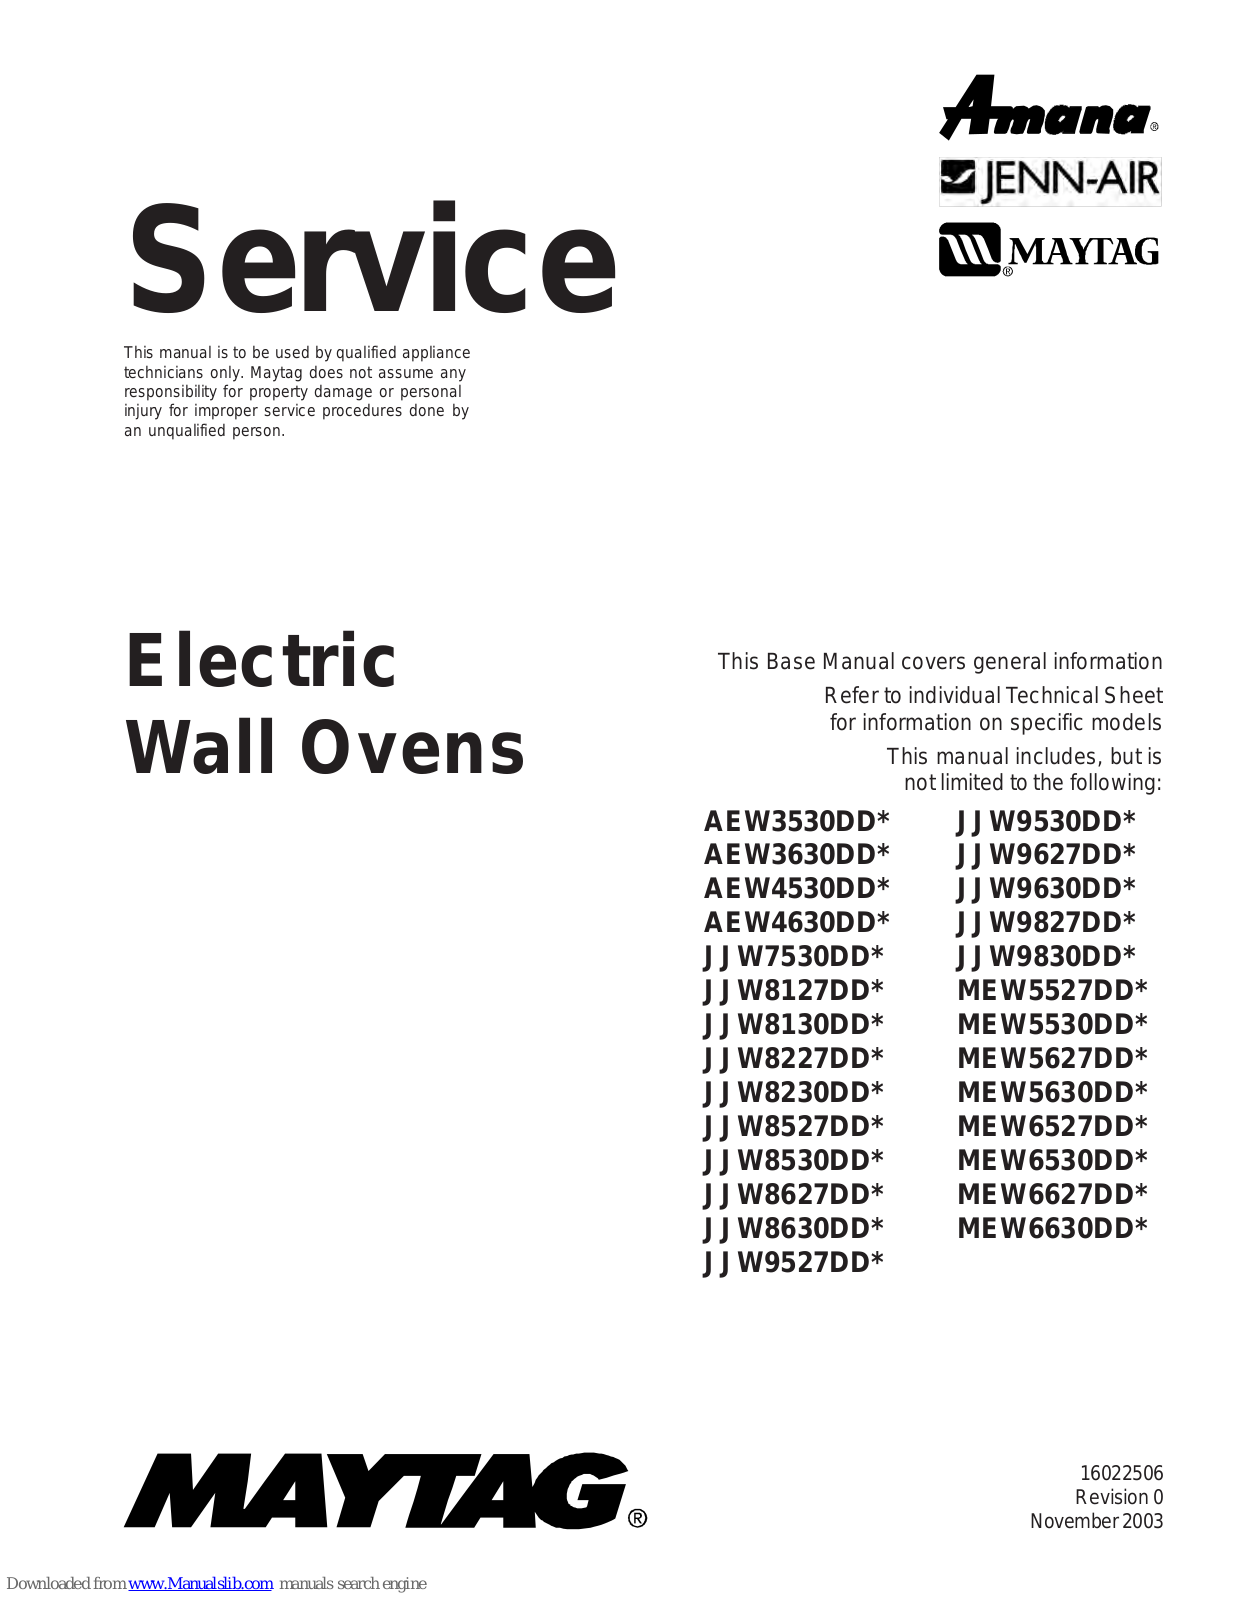 Maytag AEW3630DD Series, JJW7530DD Series, AEW4530DD Series, AEW4630DD Series, JJW8127DD Series Service Manual